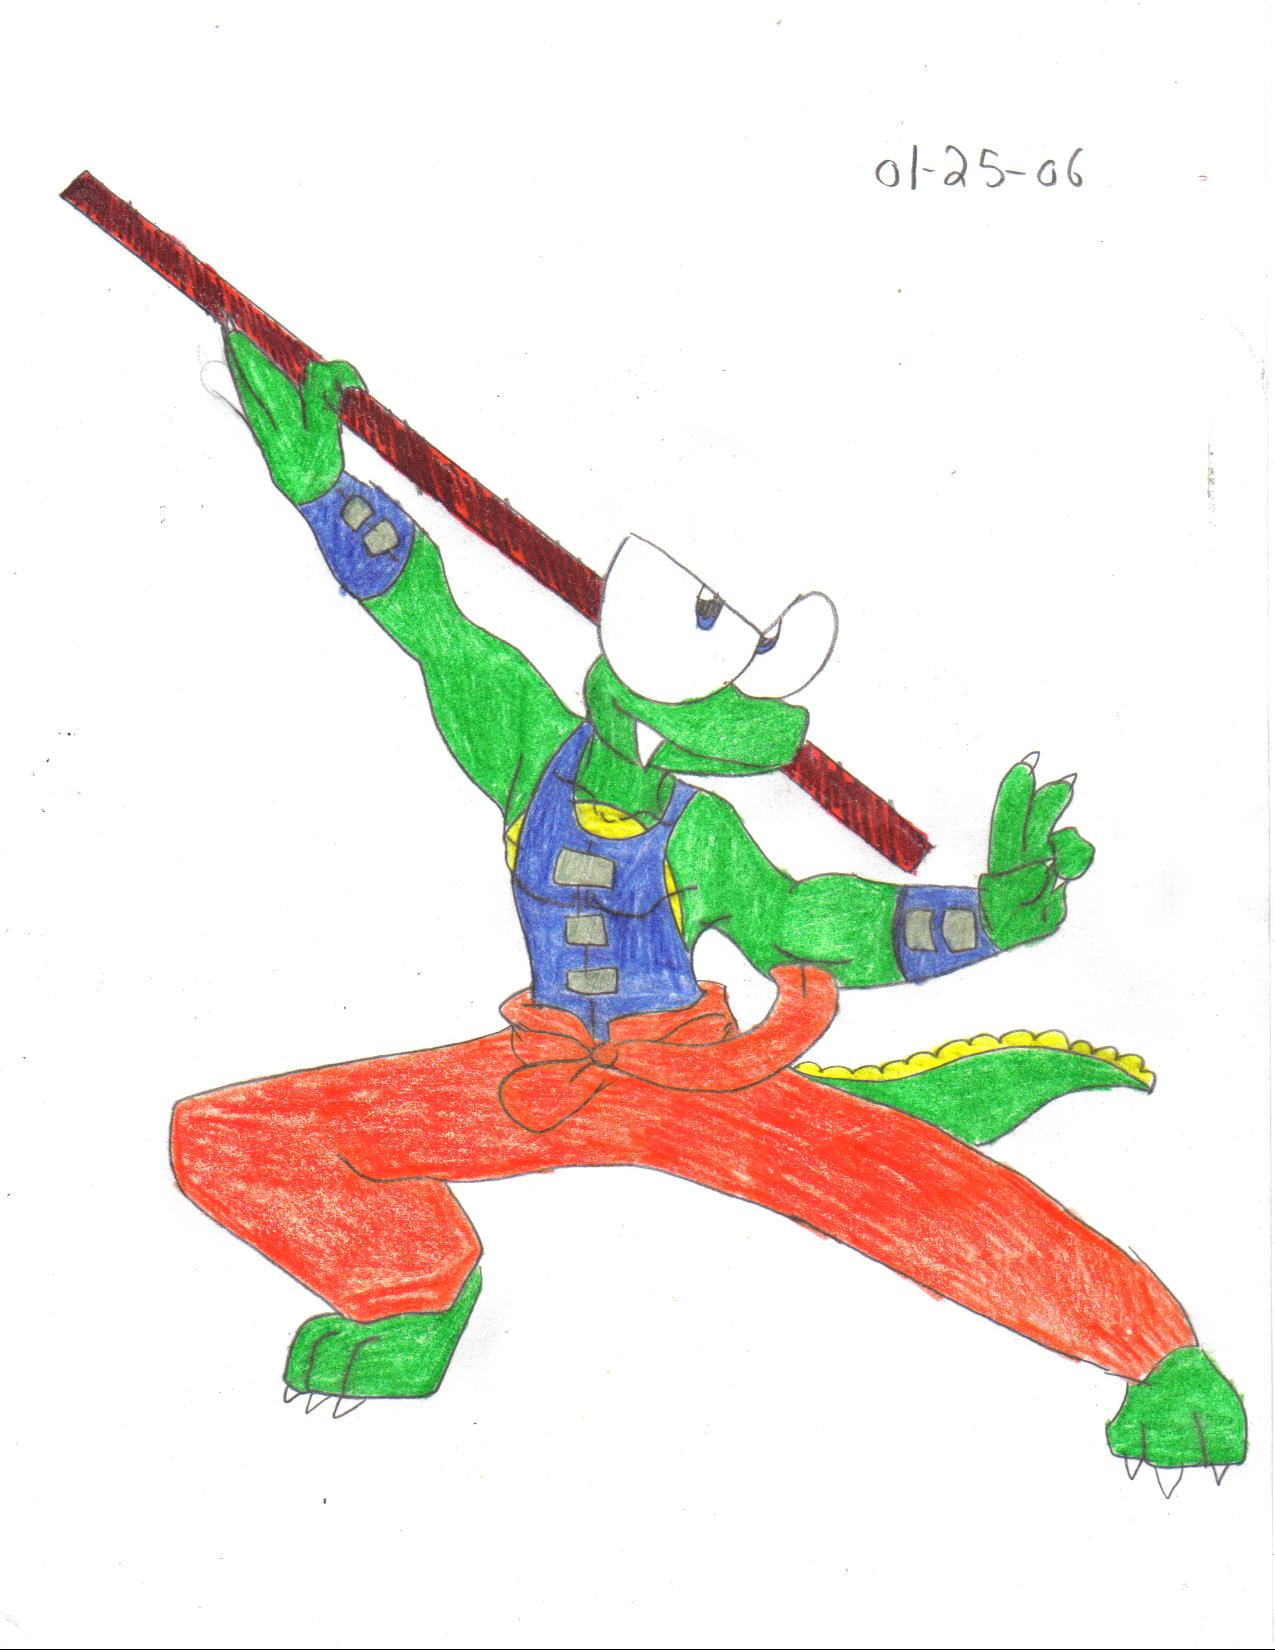 Kung Fu: Croc style by crocdragon89